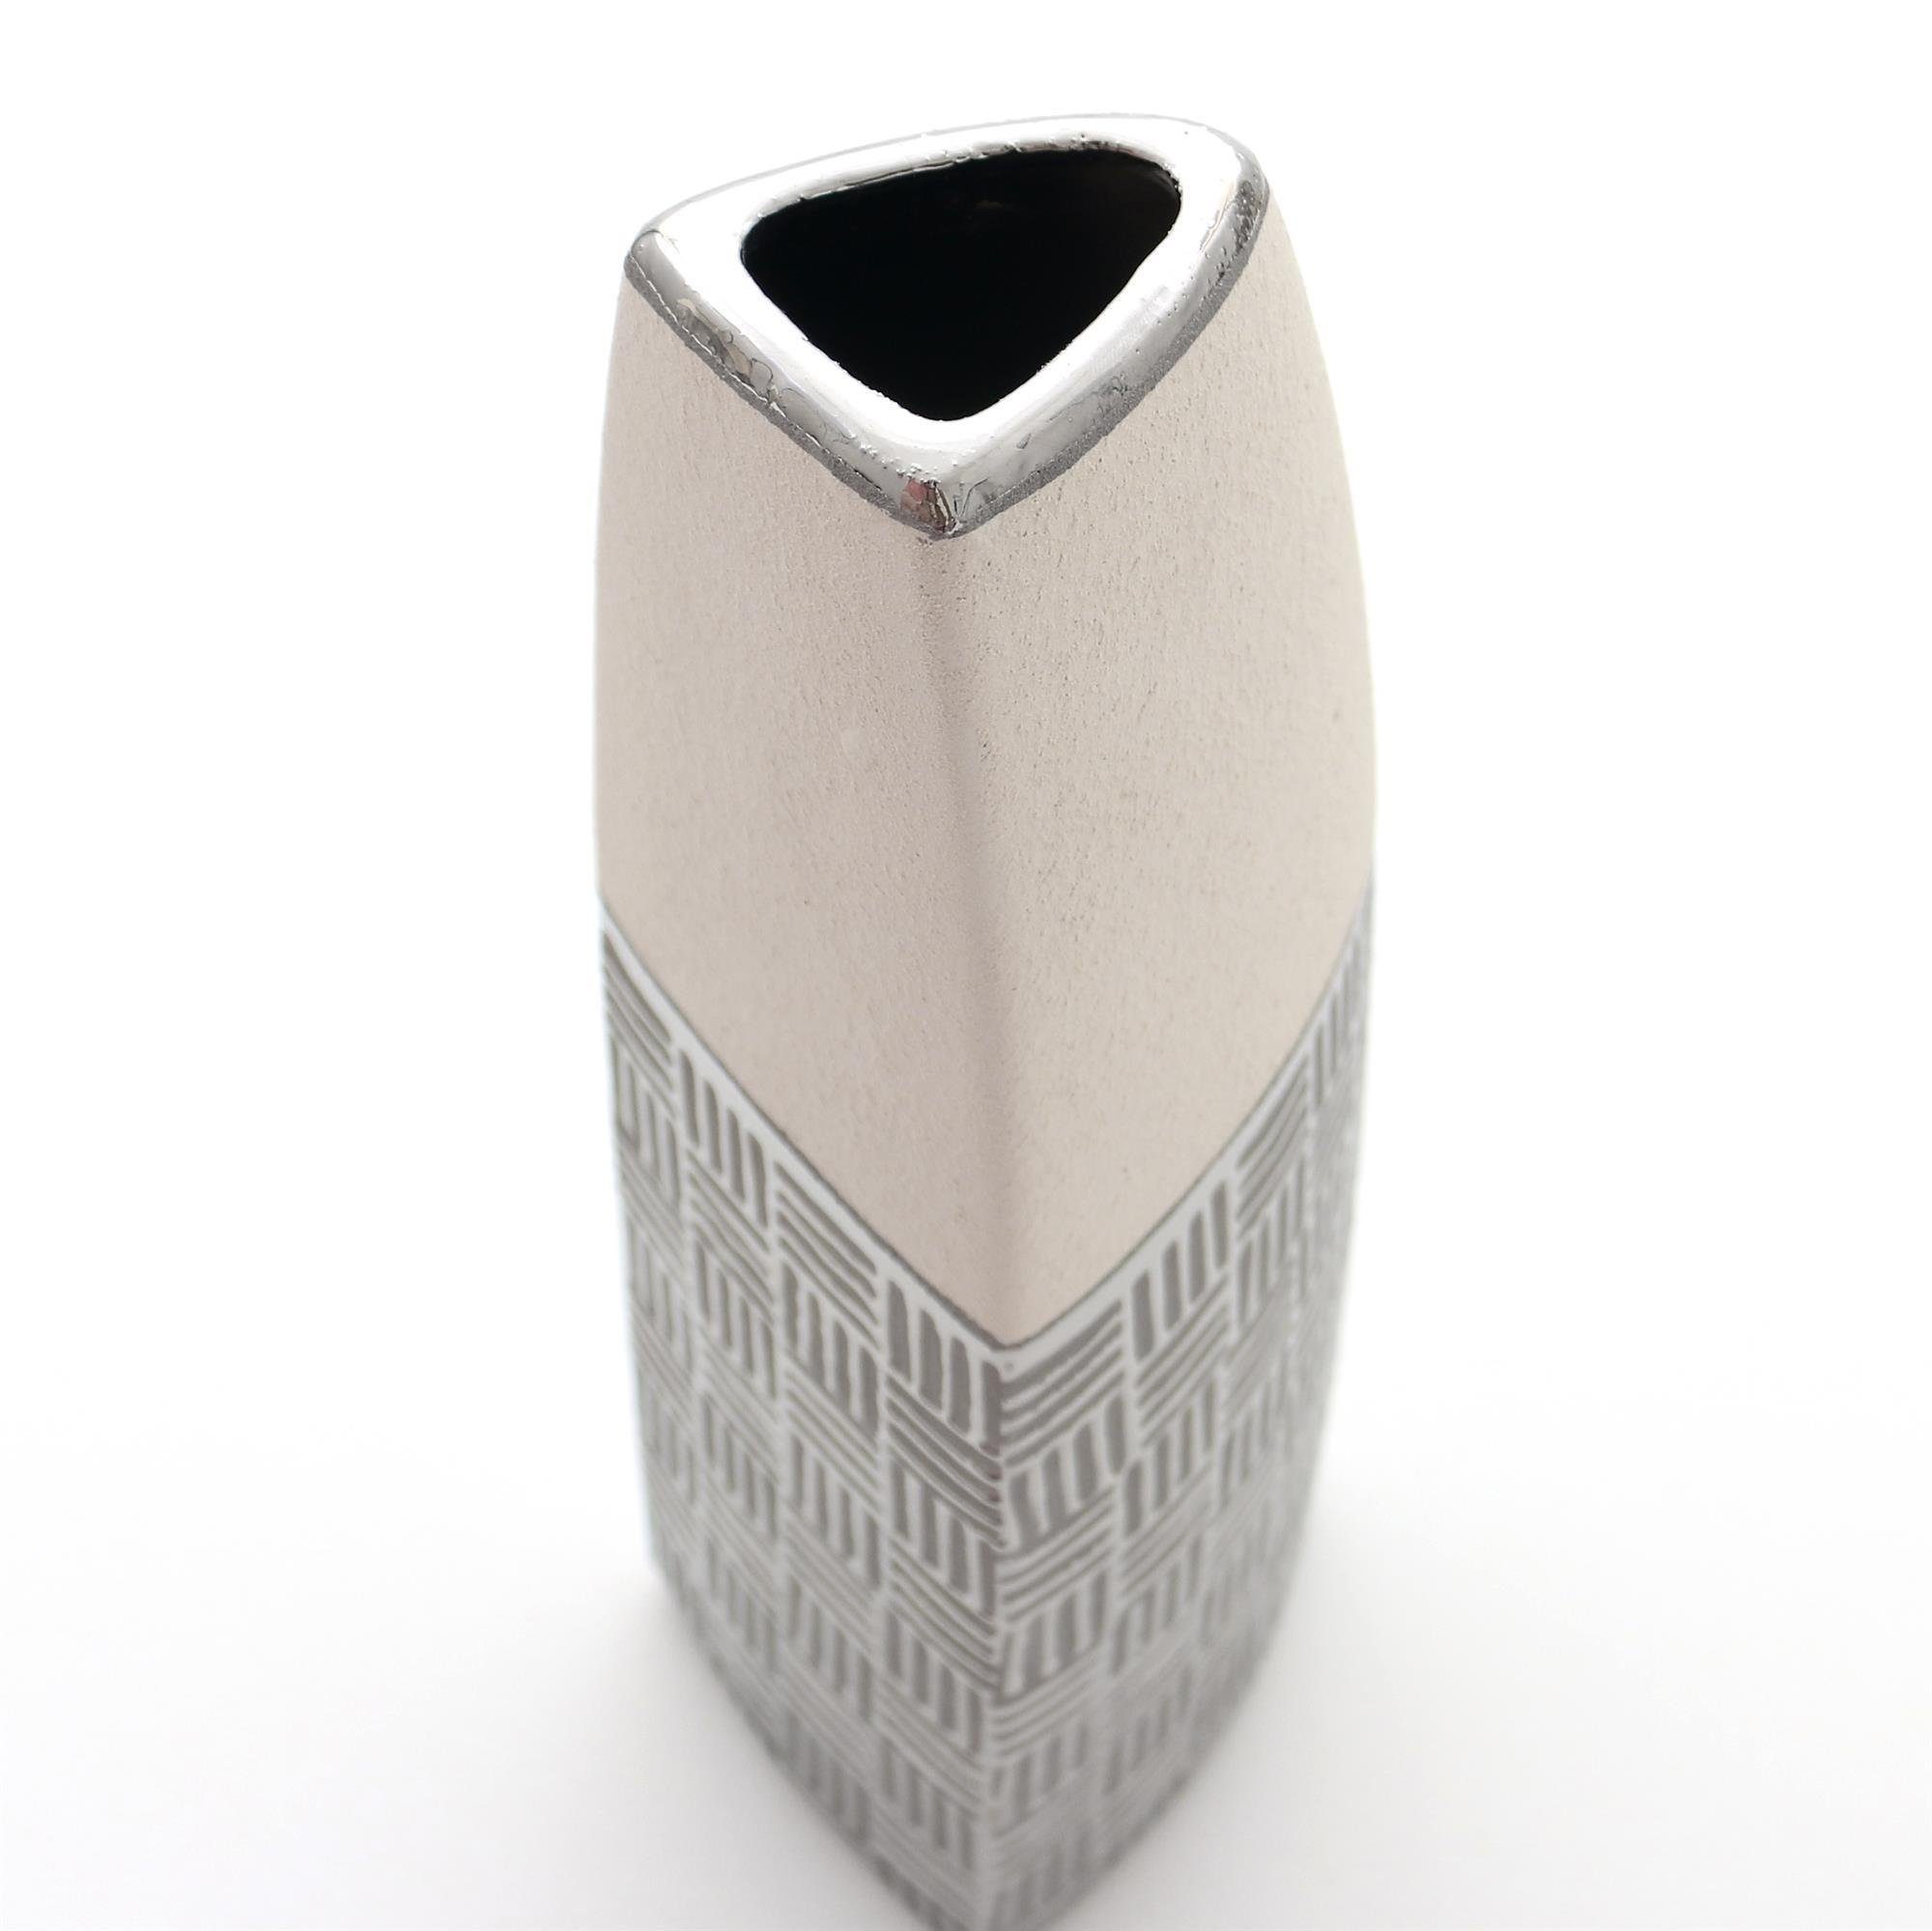 Dekohelden24 Dekovase Edle silber-grau (kein, Deko St) weiß in Designer Keramik Segel moderne Vase 1